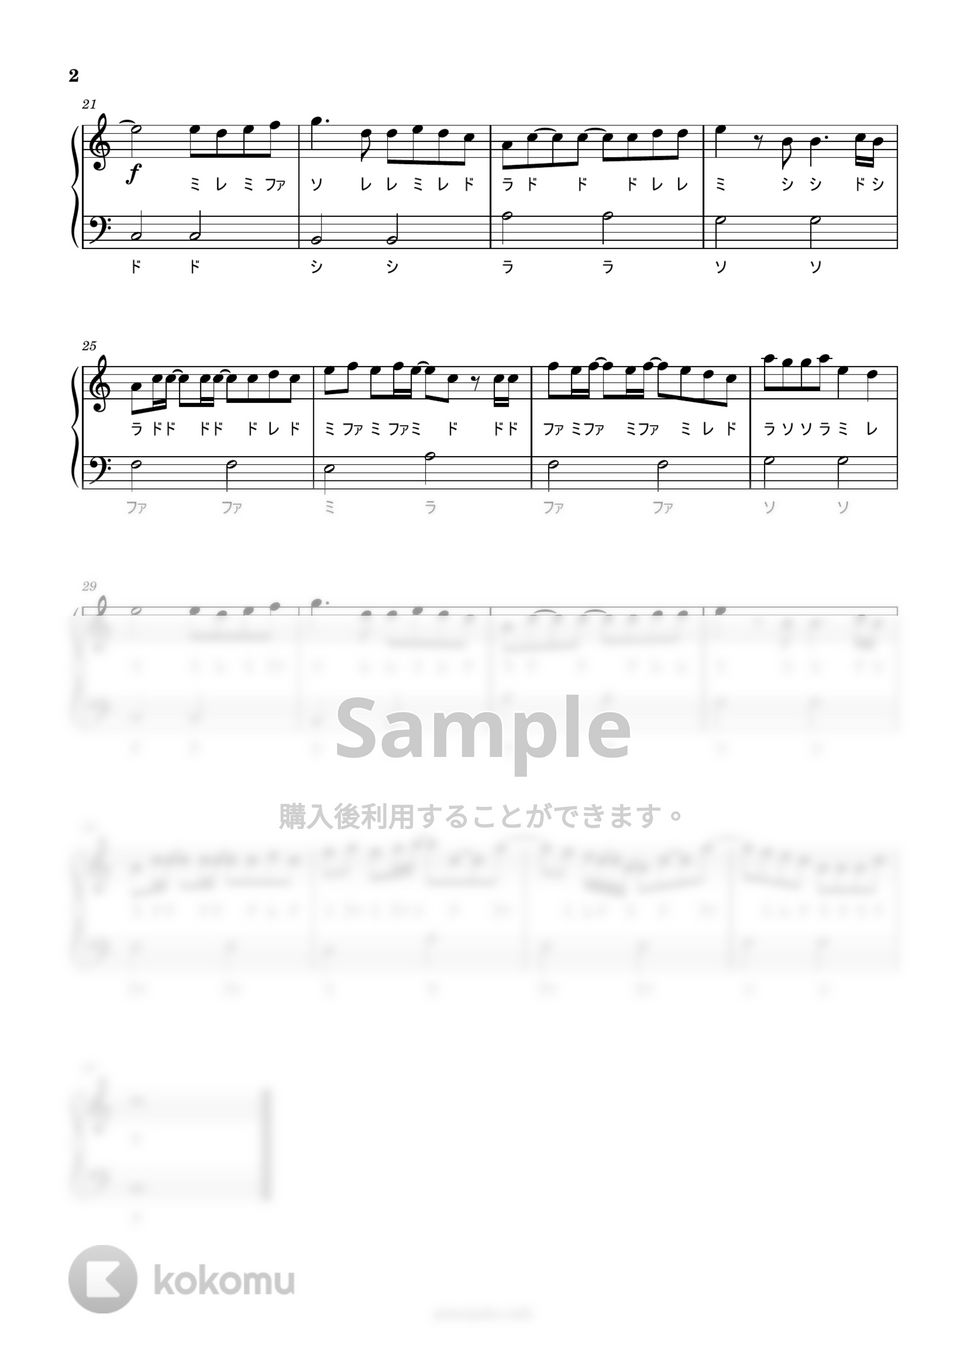 あいみょん - マリーゴールド (ハ長調ドレミ付き簡単楽譜) by ピアノ塾